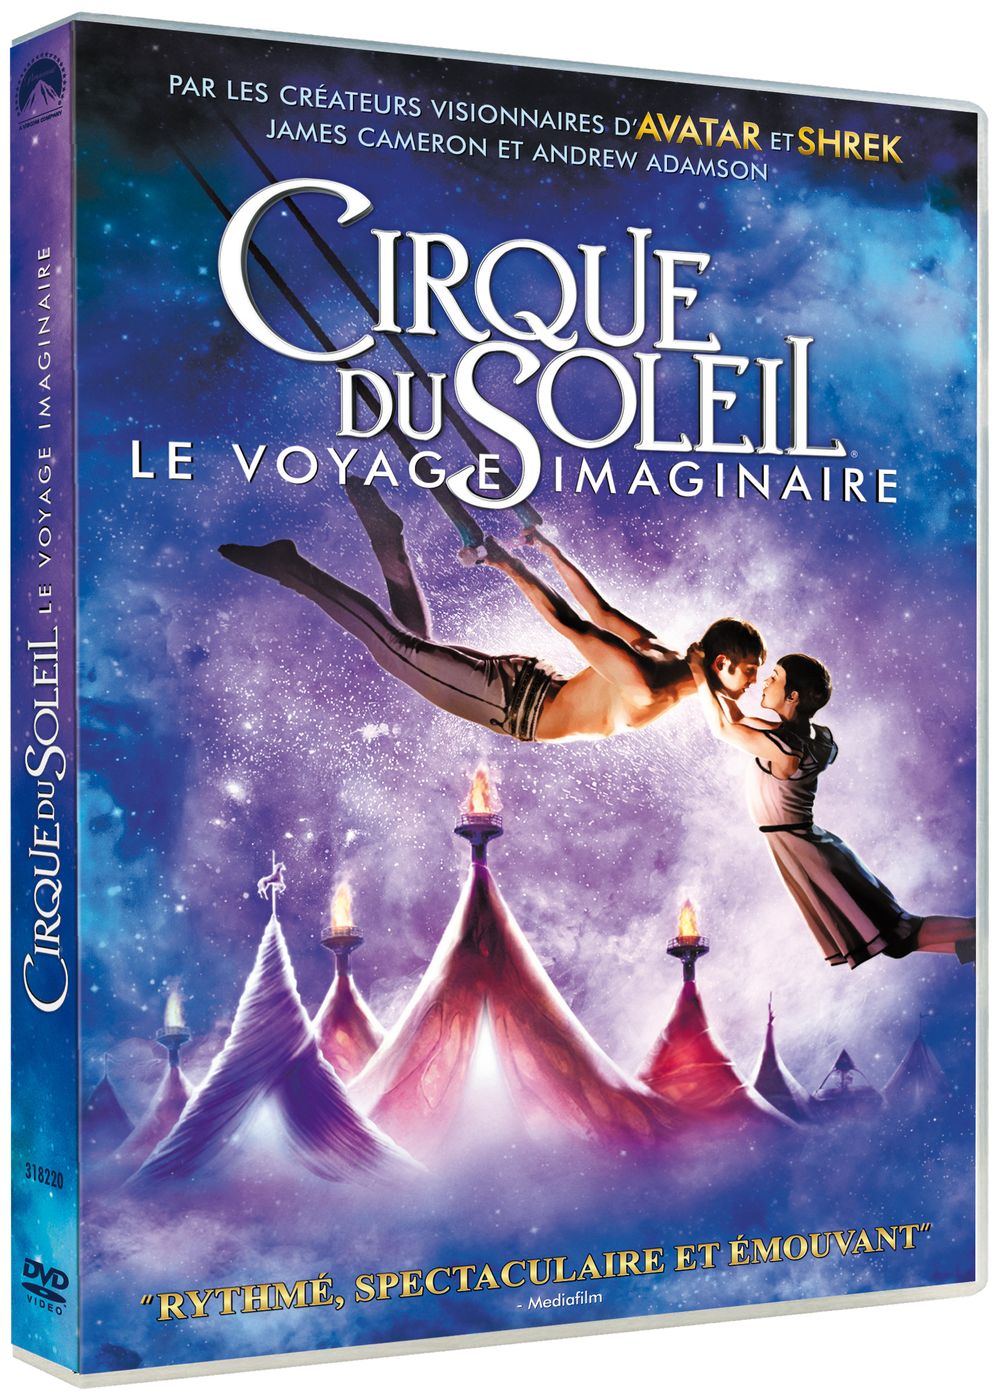 Cirque du Soleil Tickets - TicketOne